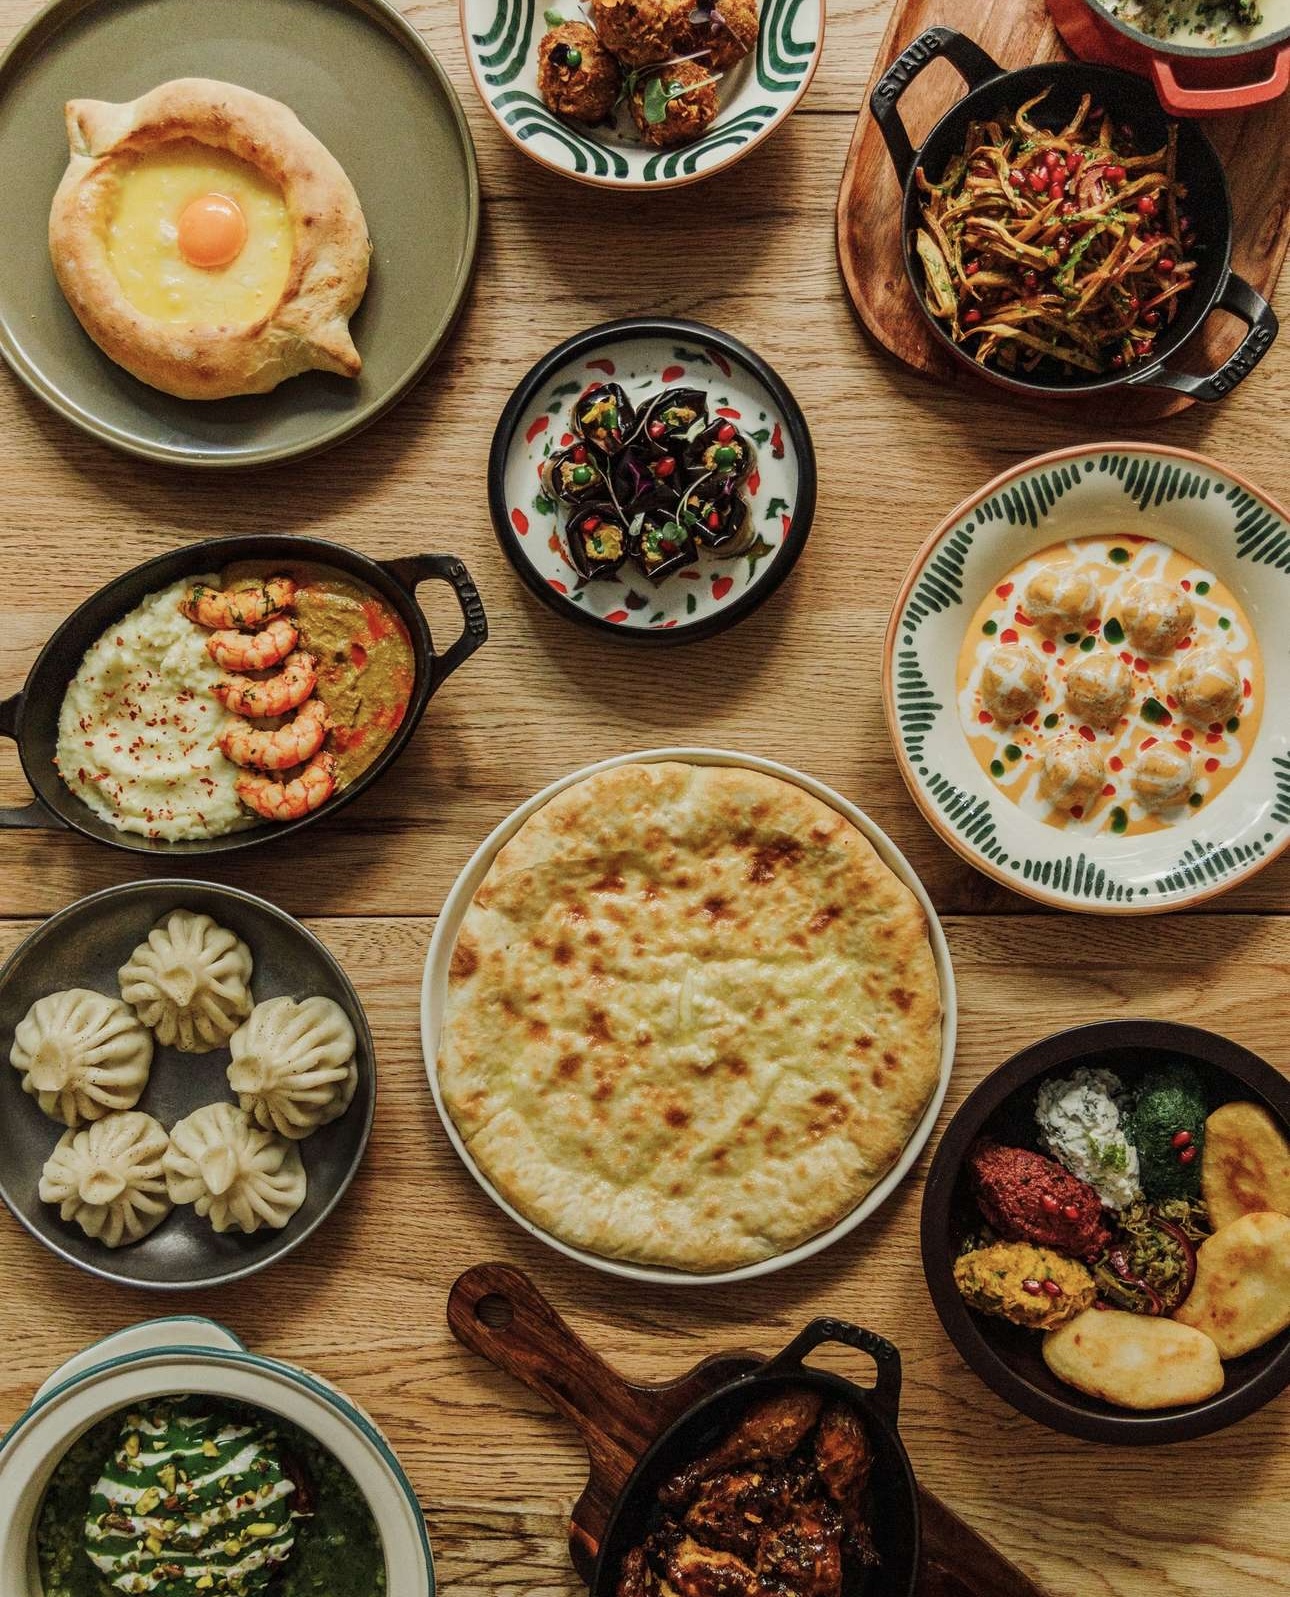 ქართული სამზარეულოს მრავალფეროვნება მსოფლიოს სხვადასხვა კუთხეში